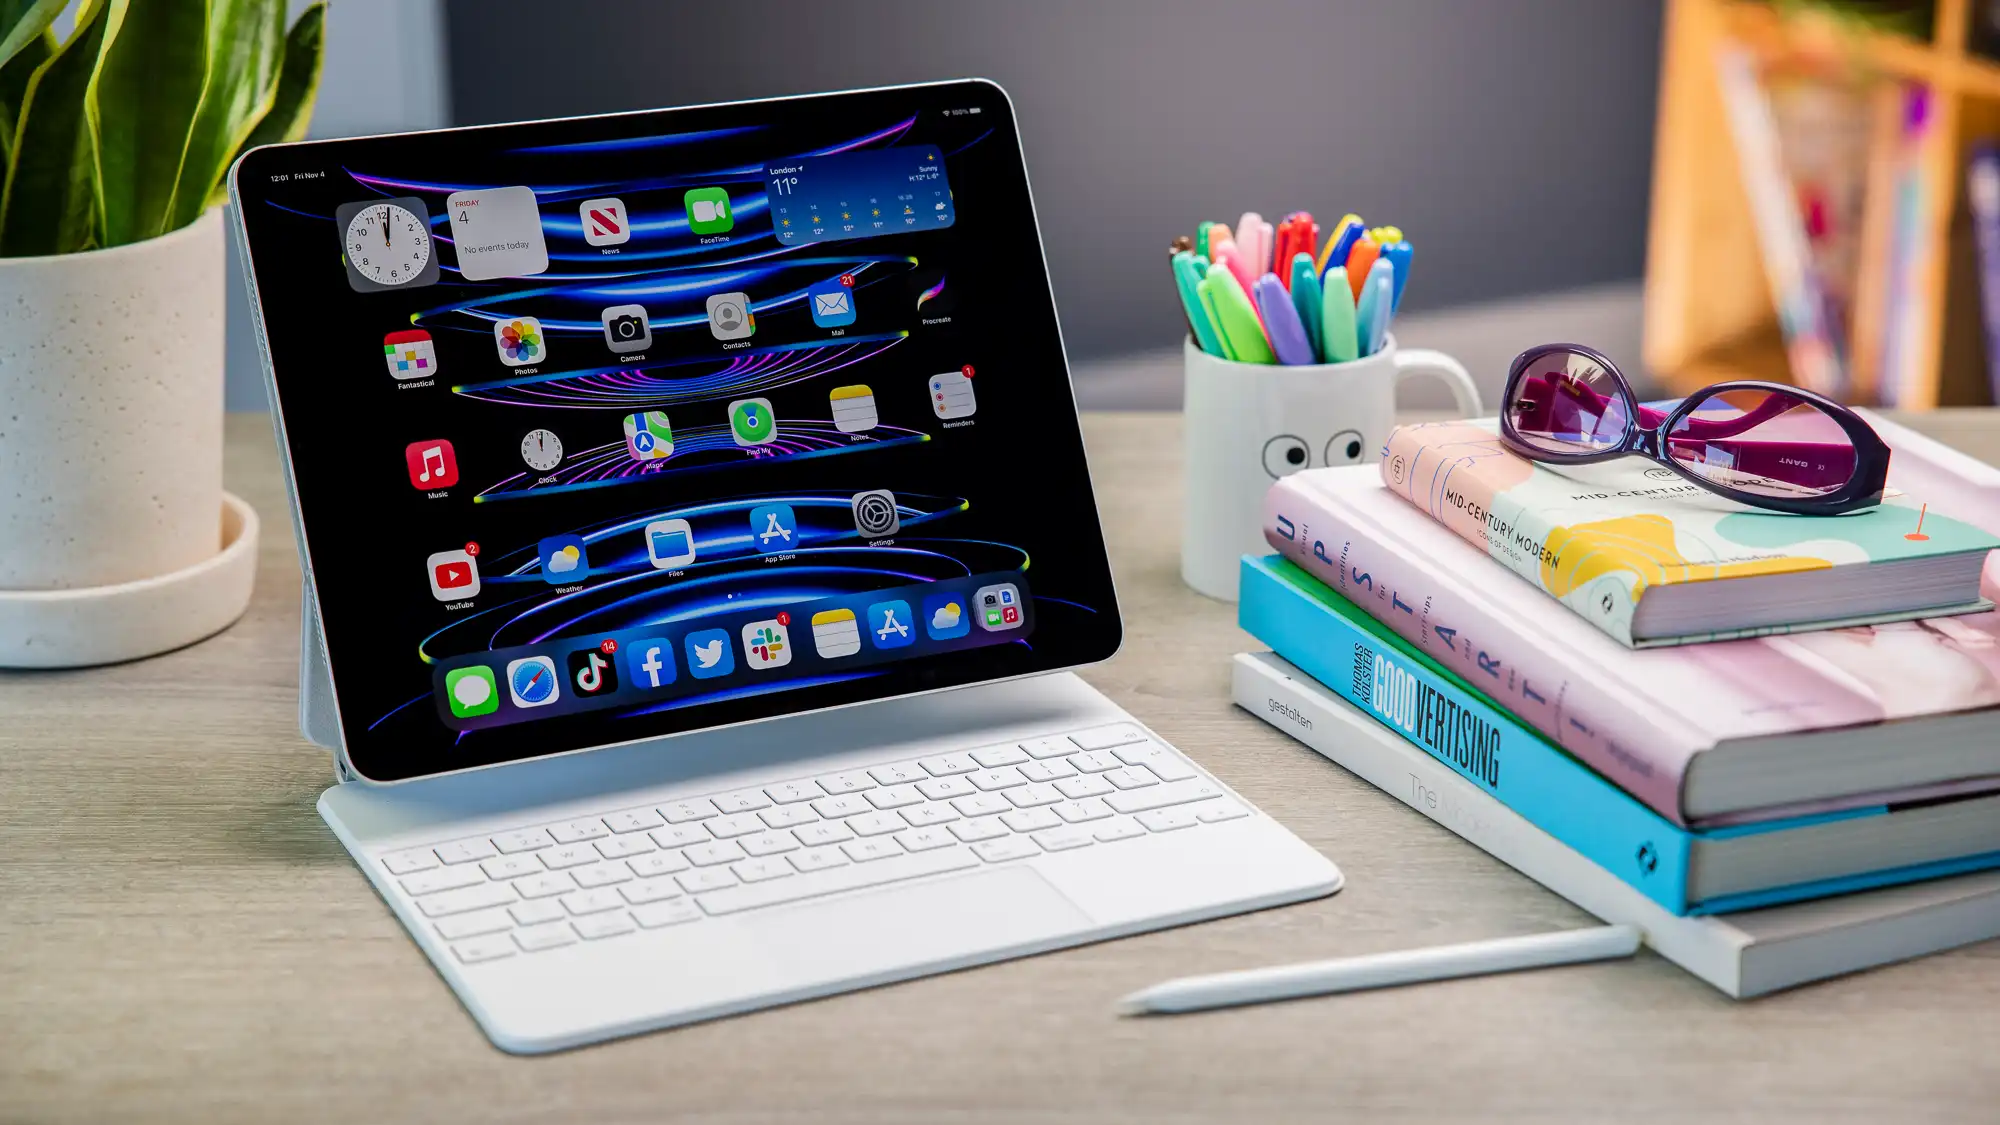 L'iPad Pro 12,9 pouces est la meilleure tablette que l'on puisse acheter, avec une puissance haut de gamme, un écran fantastique, une multitude de nouveaux petits.